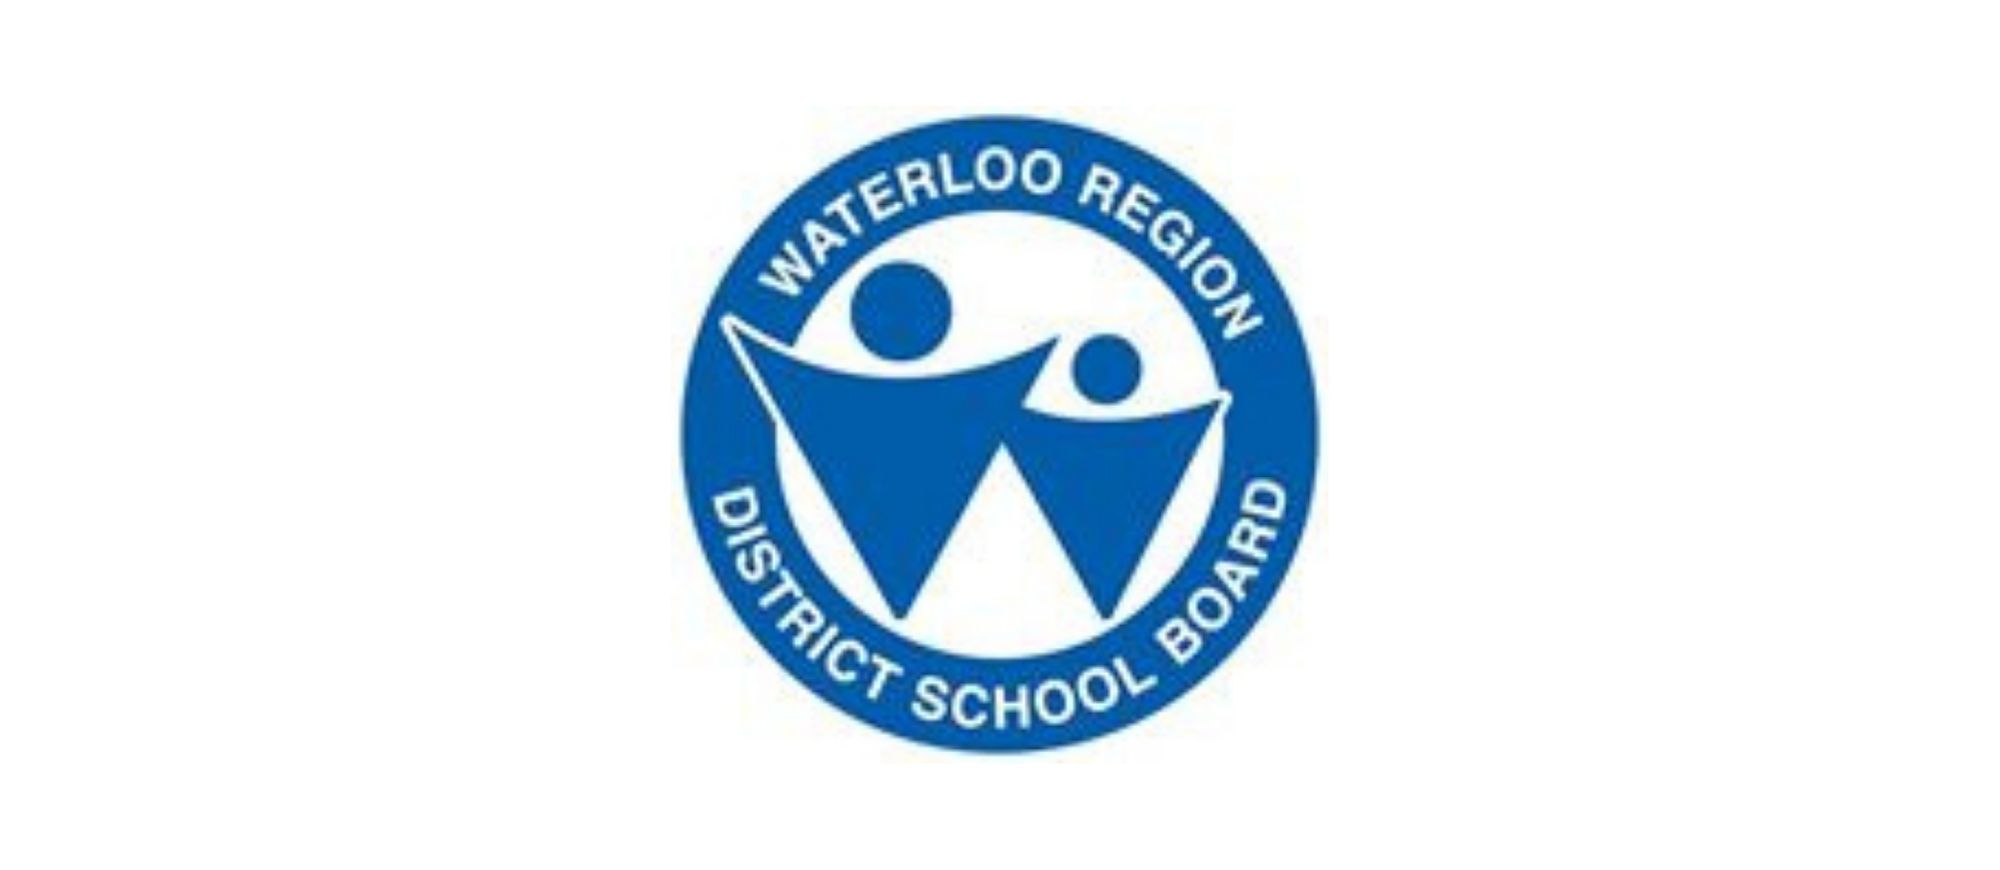 Waterloo Region District School Board logo